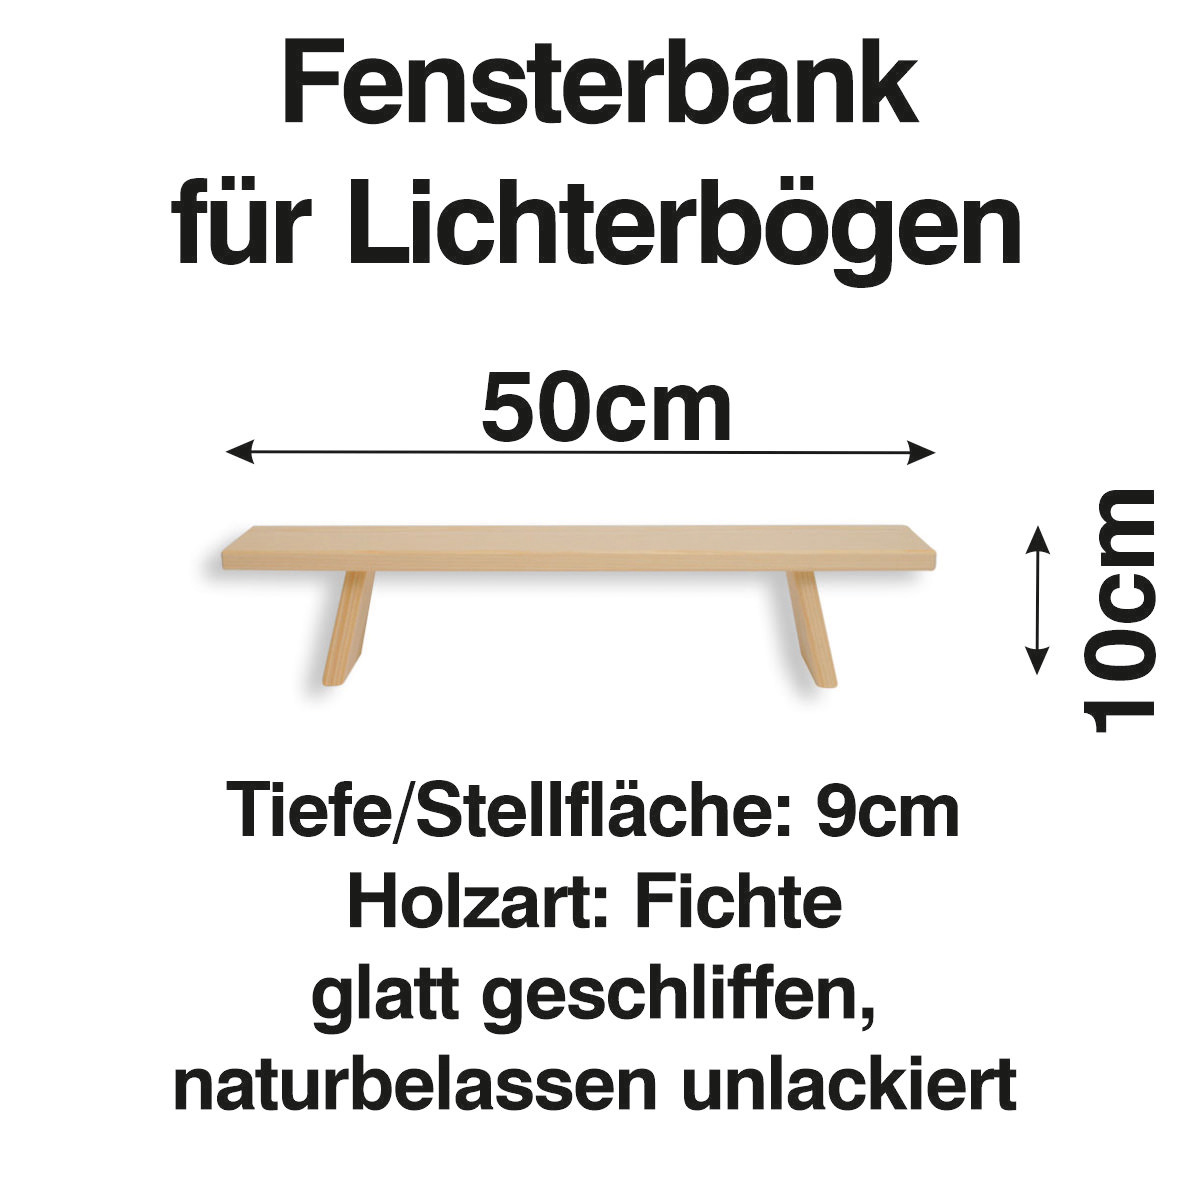 Schenk Holzkunst | Schwibbogen Bank 50 cm Erhöhung Lichterbogen Fensterbank  | Holzkunst online kaufen